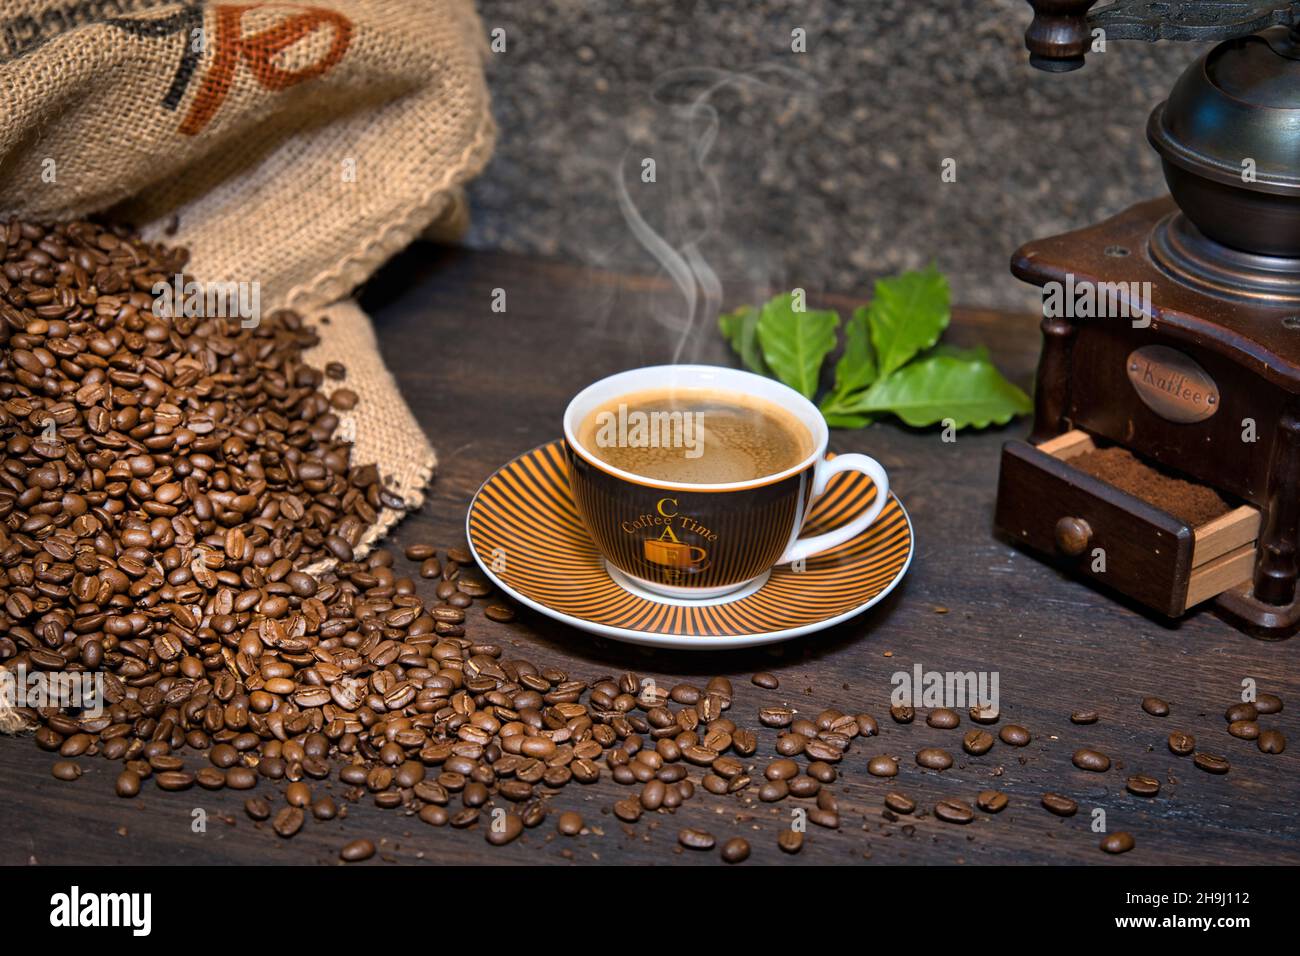 Kaffee Komposition mit dampfender Kaffeetasse, Kaffeebohnen in Kaffeesack, historischer Kaffeemühle und Kaffeeblätter auf einem Holztisch Foto Stock